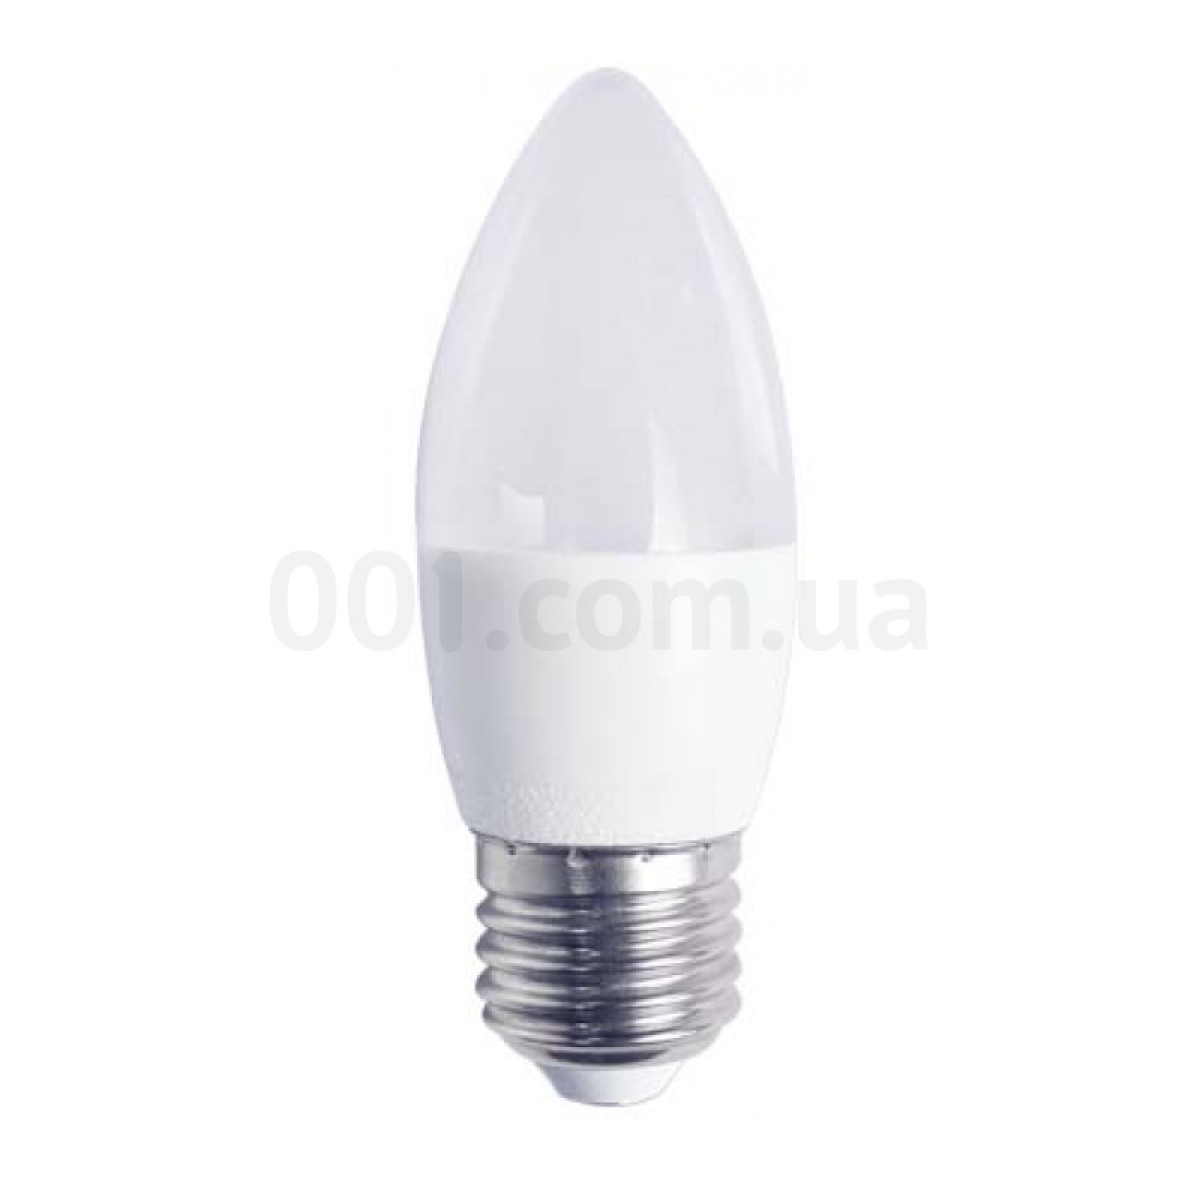 Світлодіодна лампа LB-737 C37 (свічка) 6Вт 4000K E27, Feron 256_256.jpg